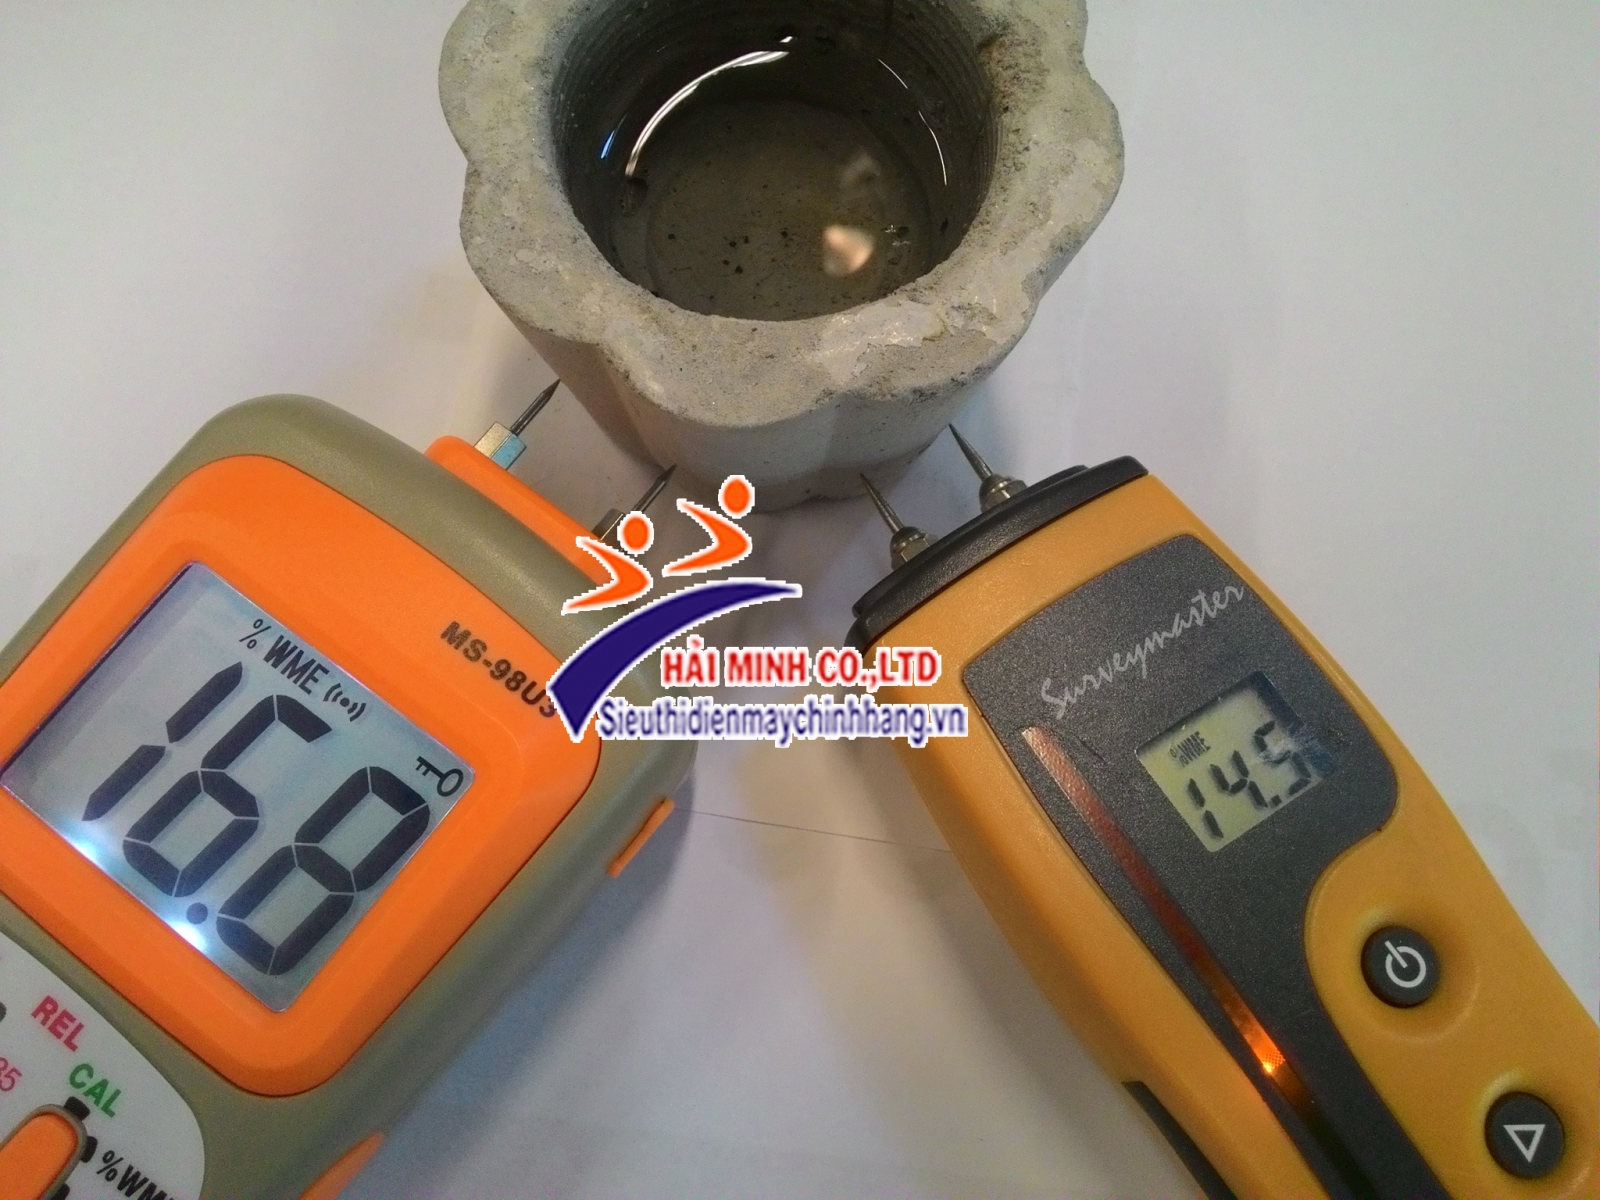 Hướng dẫn cách mua máy đo độ ẩm chất lượng